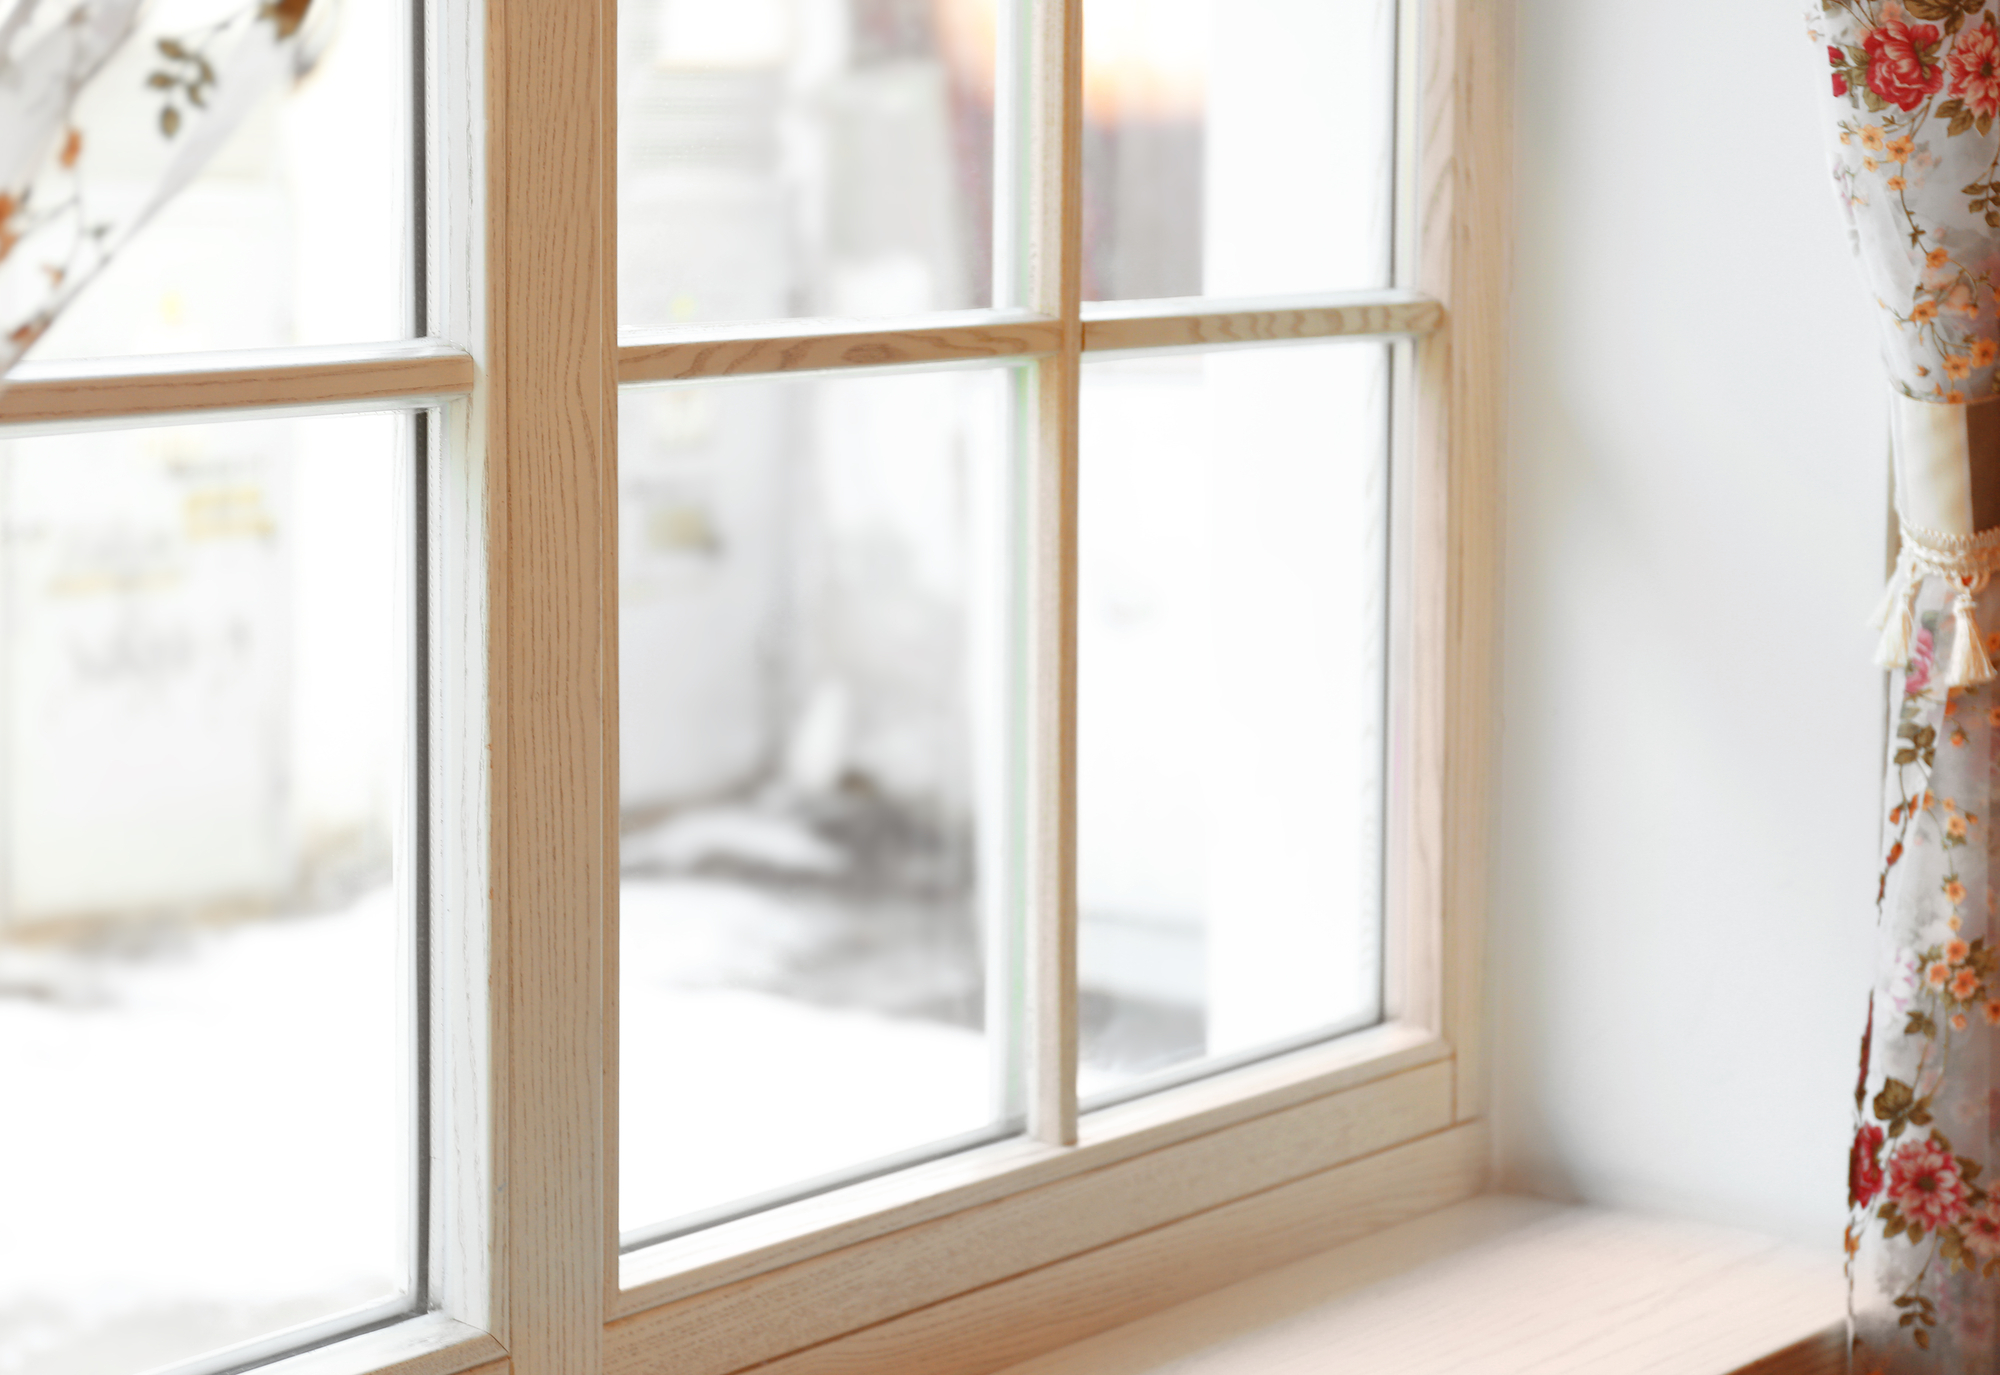 Optimalt materialevalg og design for drypnæser til vinduer